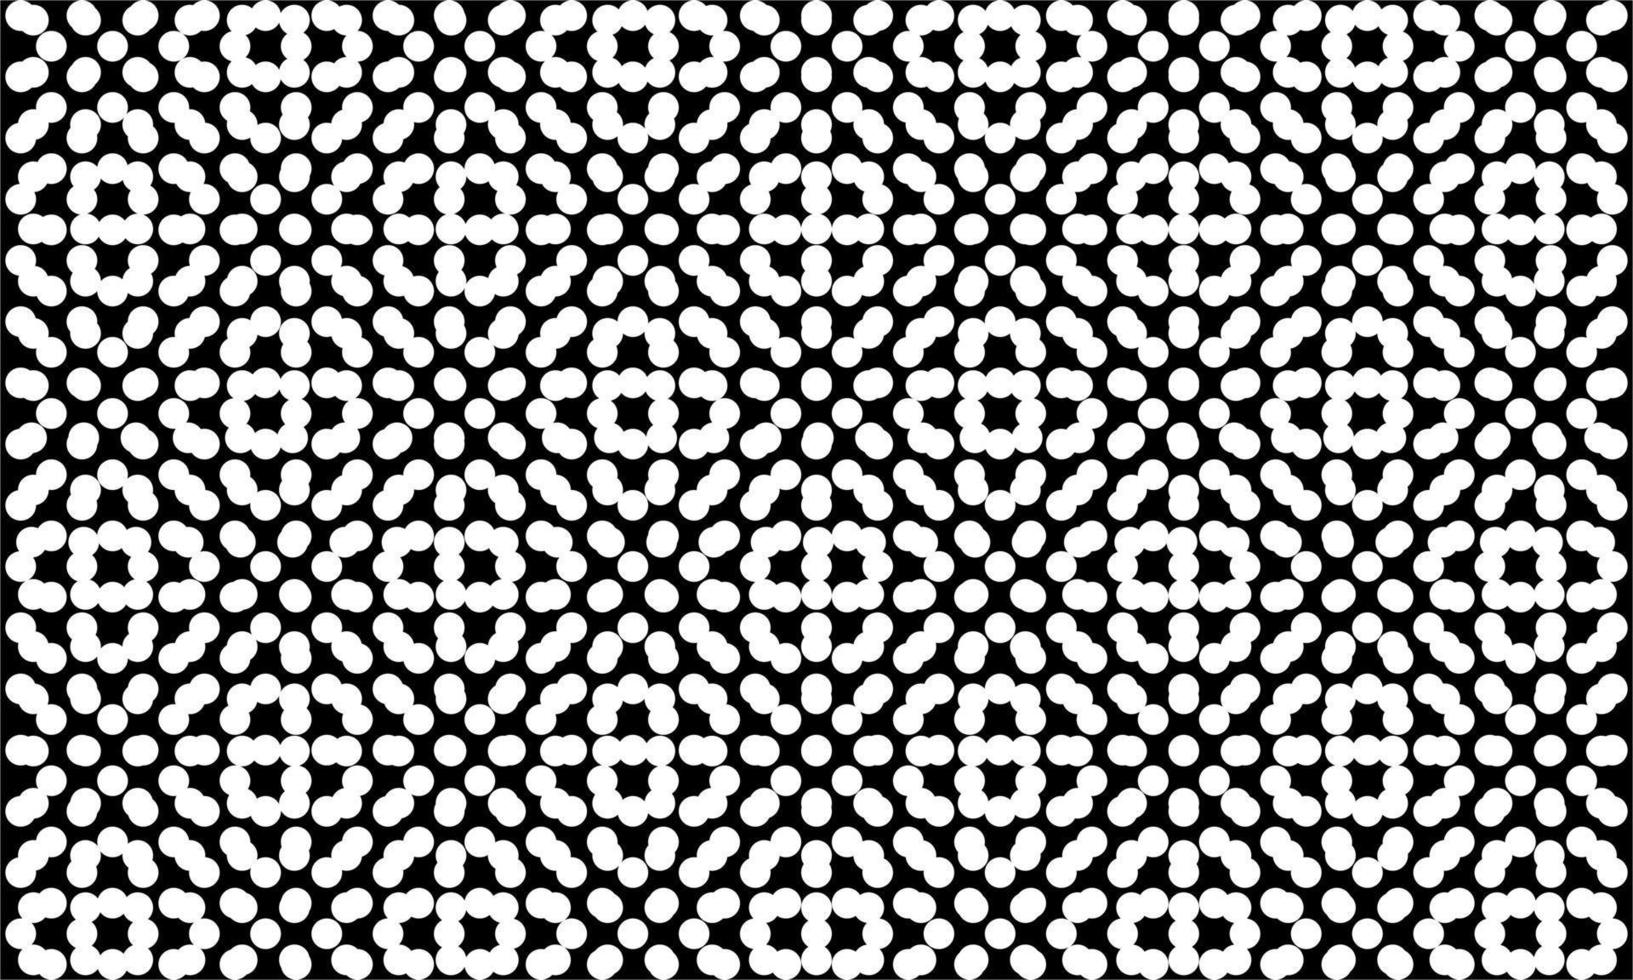 Polka Dots Motivmuster. kreisform dekorativ für innen, außen, teppich, textil, kleidungsstück, stoff, seide, fliesen, tapeten, verpackung, papier, kunststoff, ect. Vektor-Illustration vektor